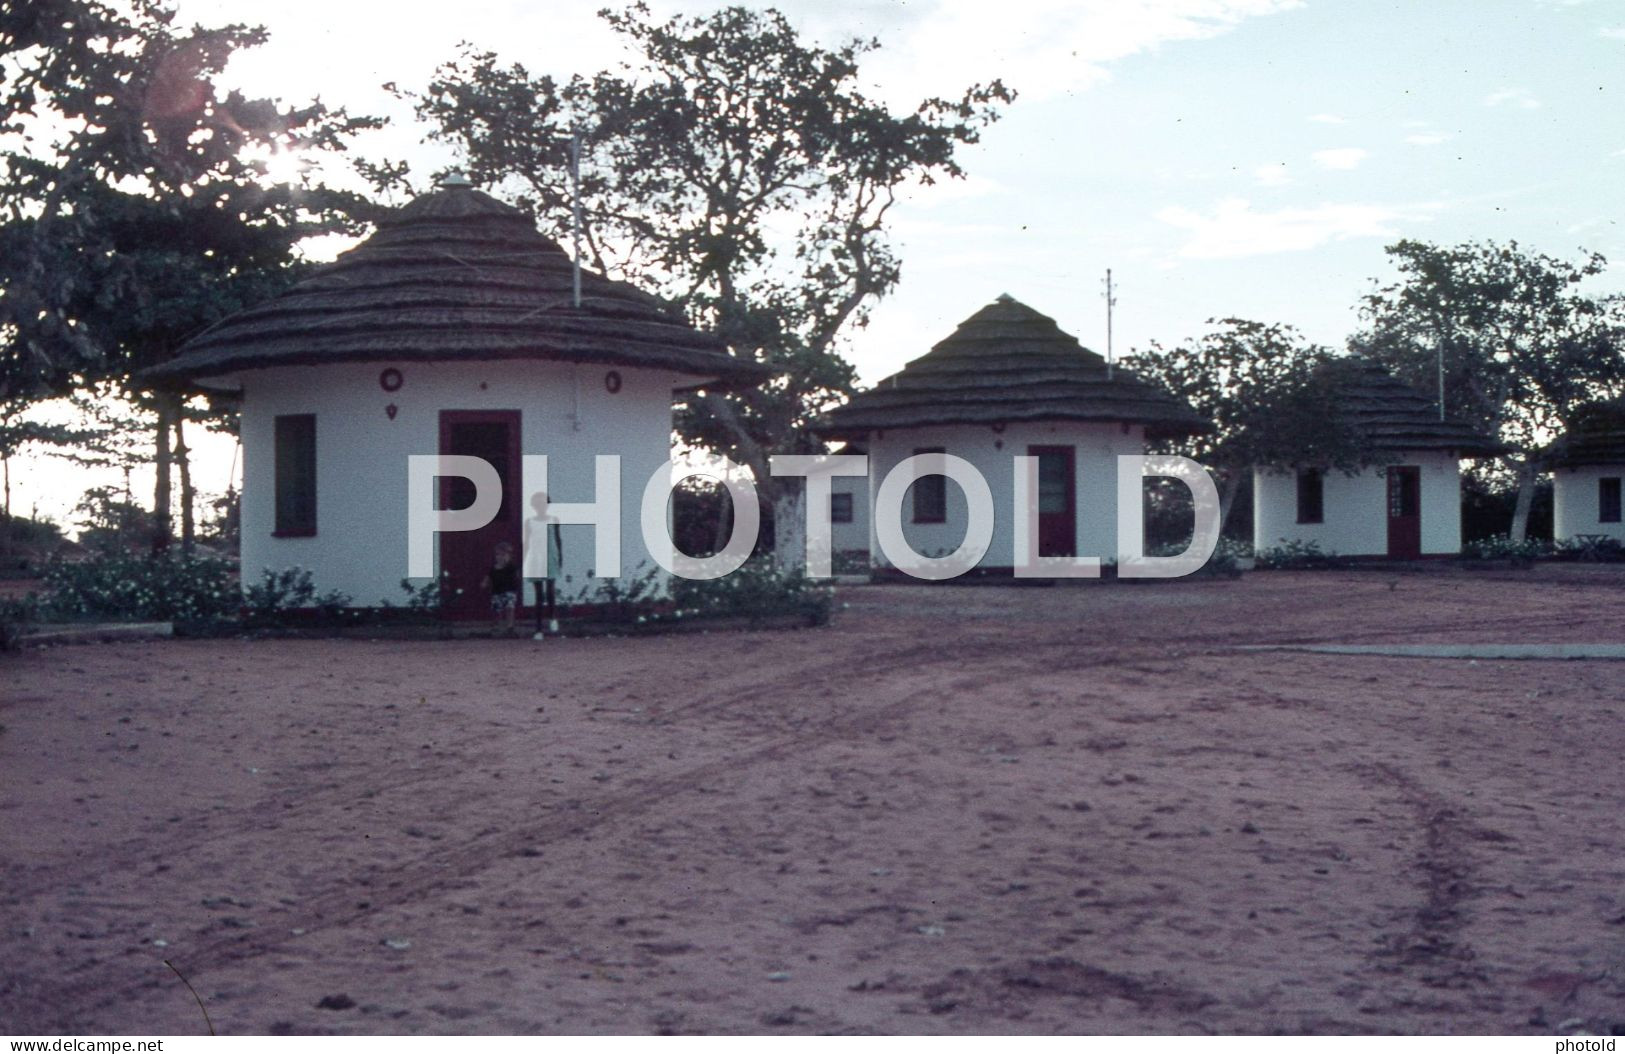 44 SLIDES SET 1968 ANGOLA AFRICA AFRIQUE ORIGINAL AMATEUR 35mm DIAPOSITIVE SLIDE not PHOTO no FOTO NB4060